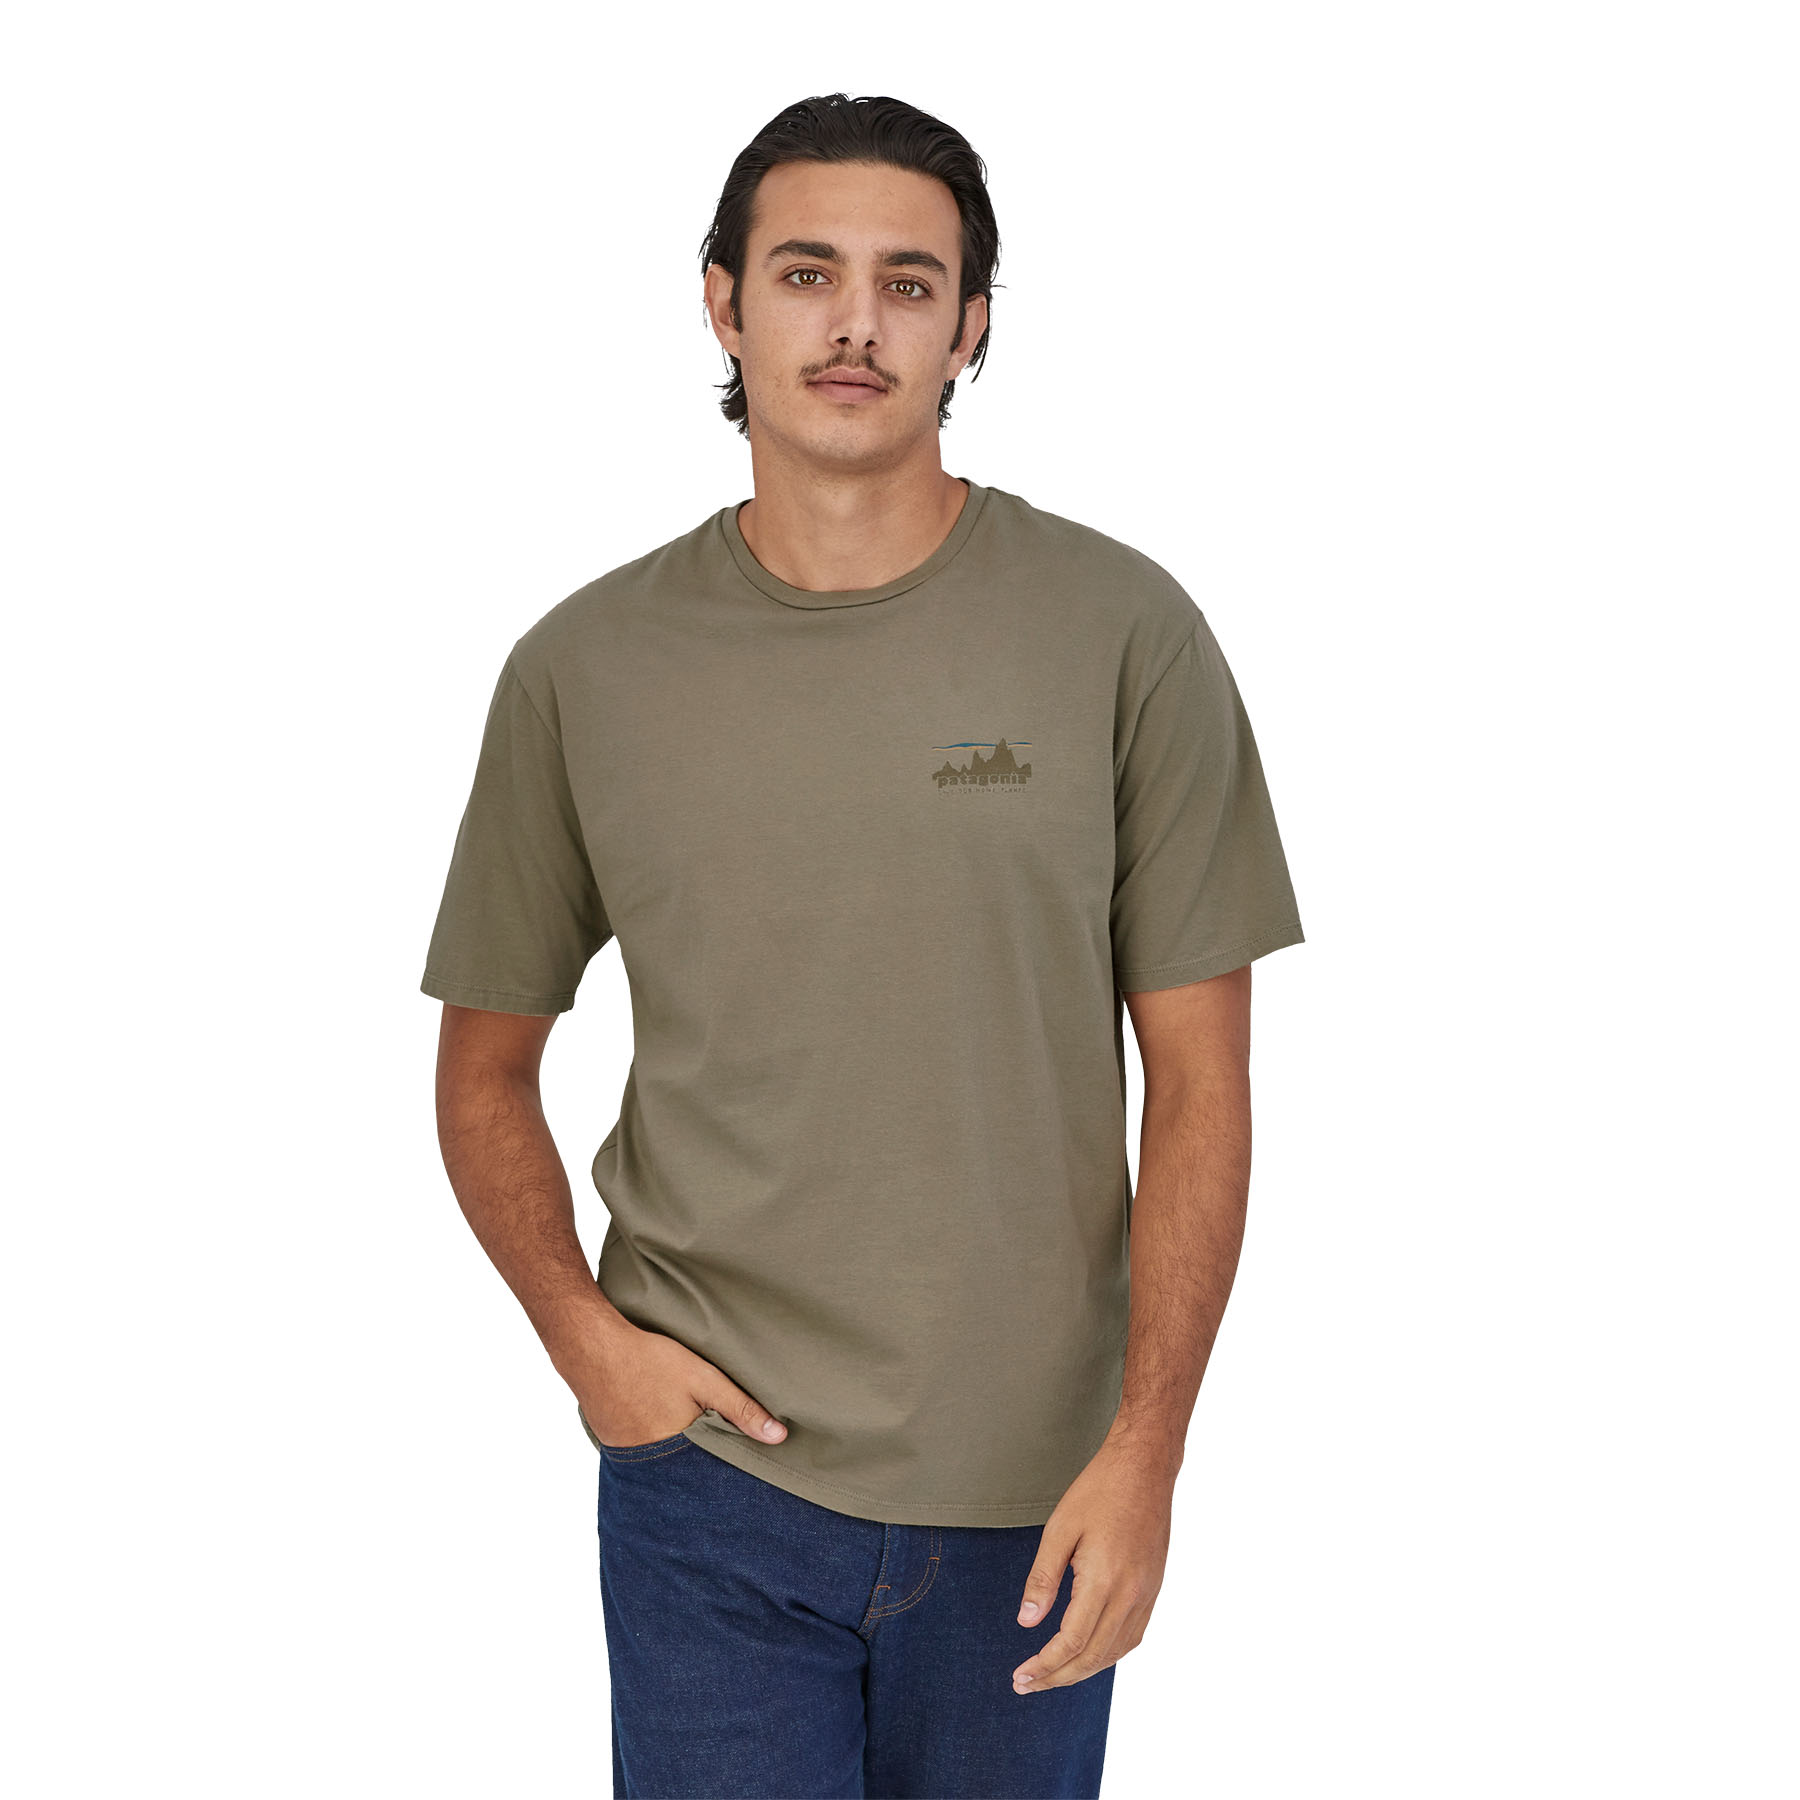 Men's '73 Skyline Organic T-Shirt (garden green)